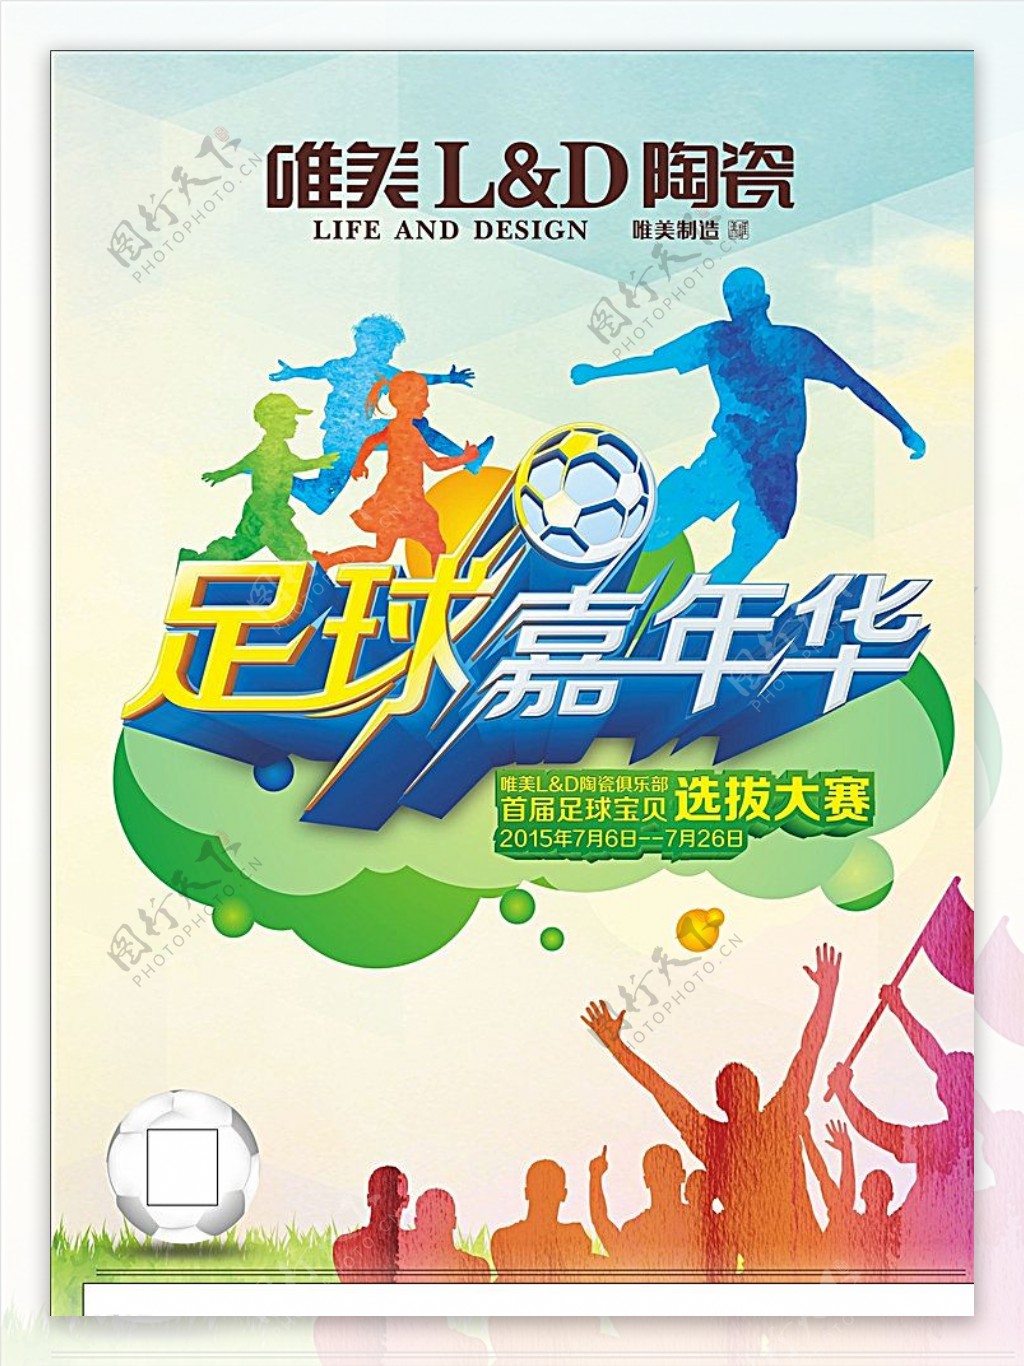 足球嘉年华体育营销活动图片